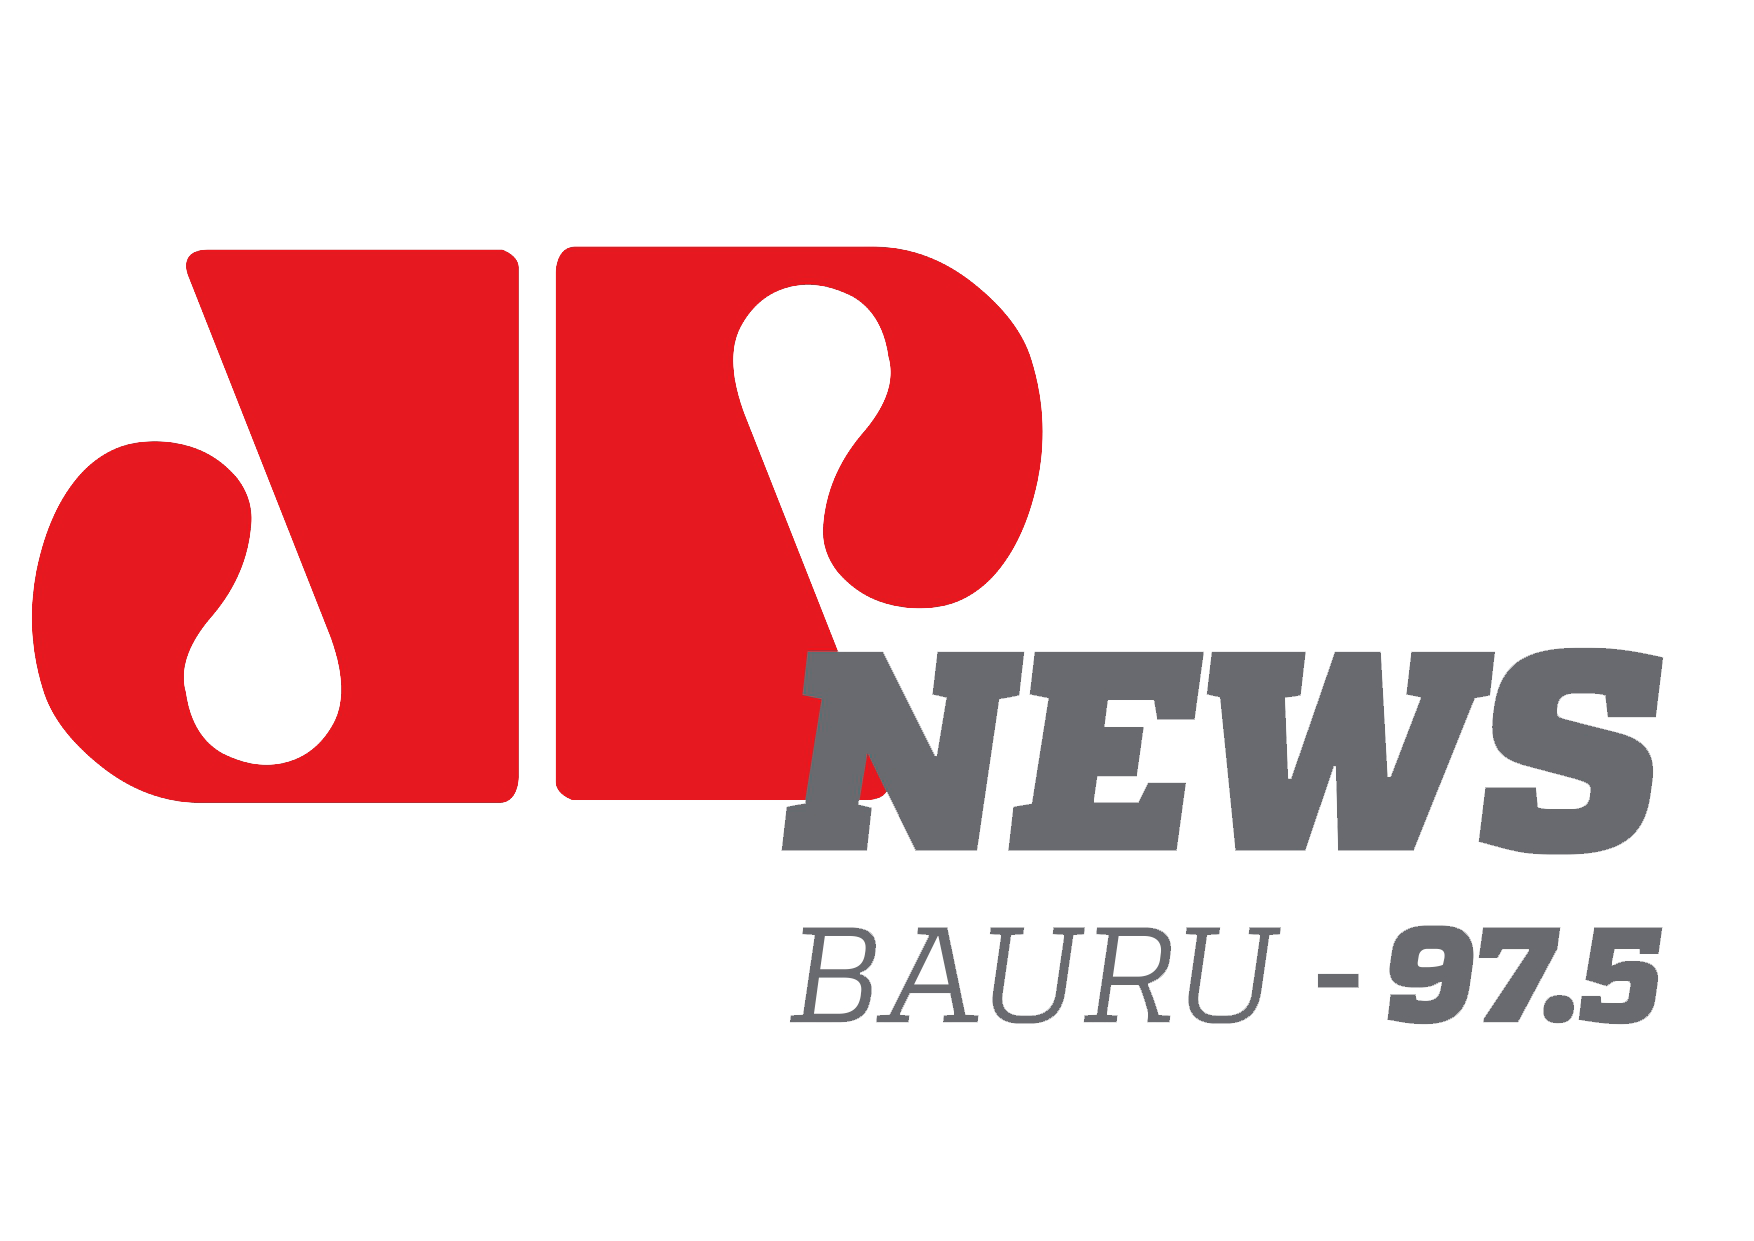 JP News Bauru